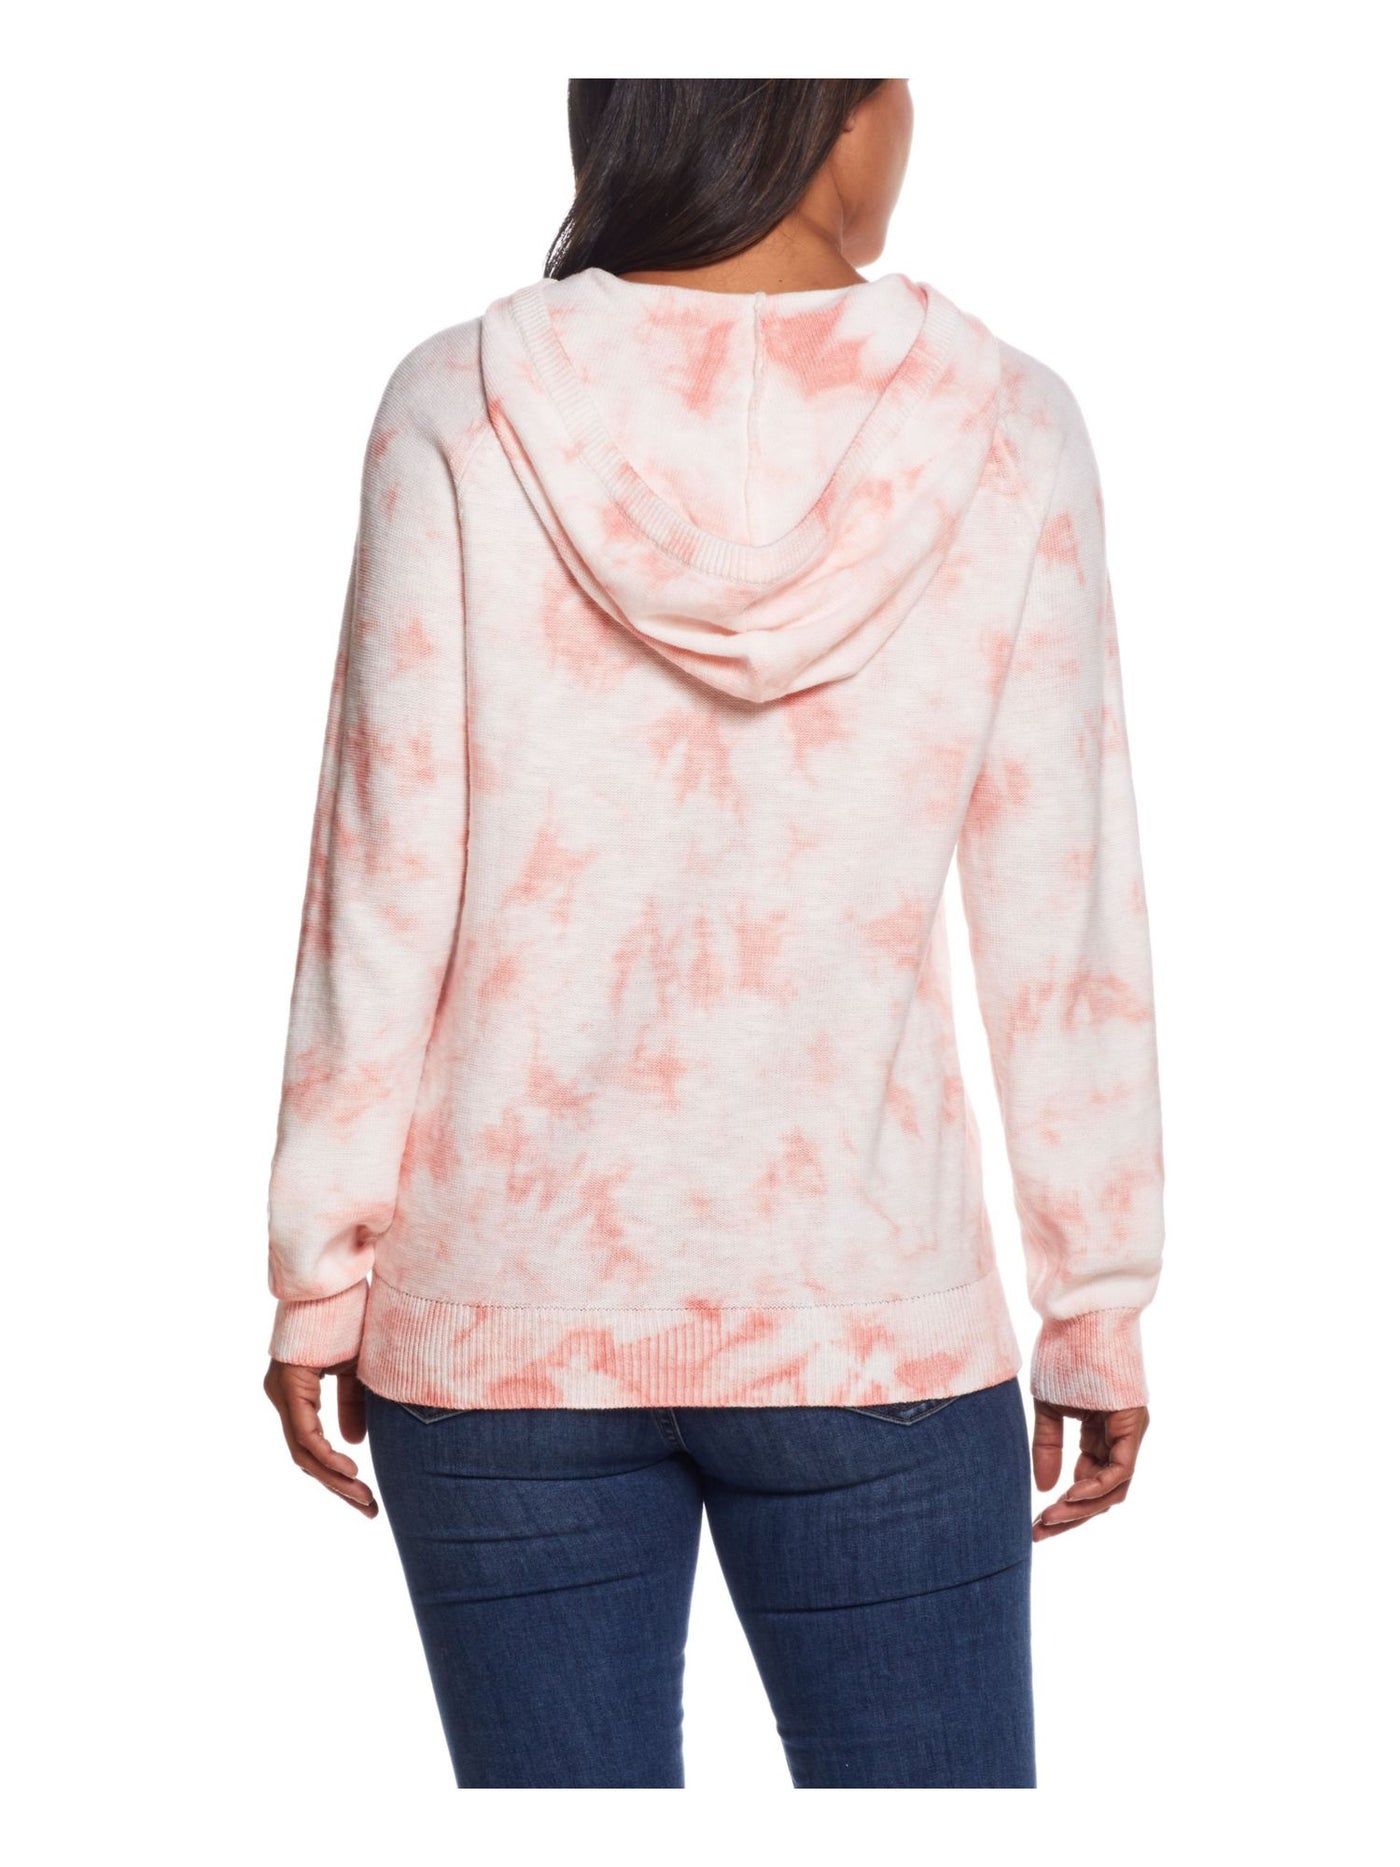 WEATHERPROOF VINTAGE Womens Coral Tie Dye Long Sleeve Hoodie Sweater S